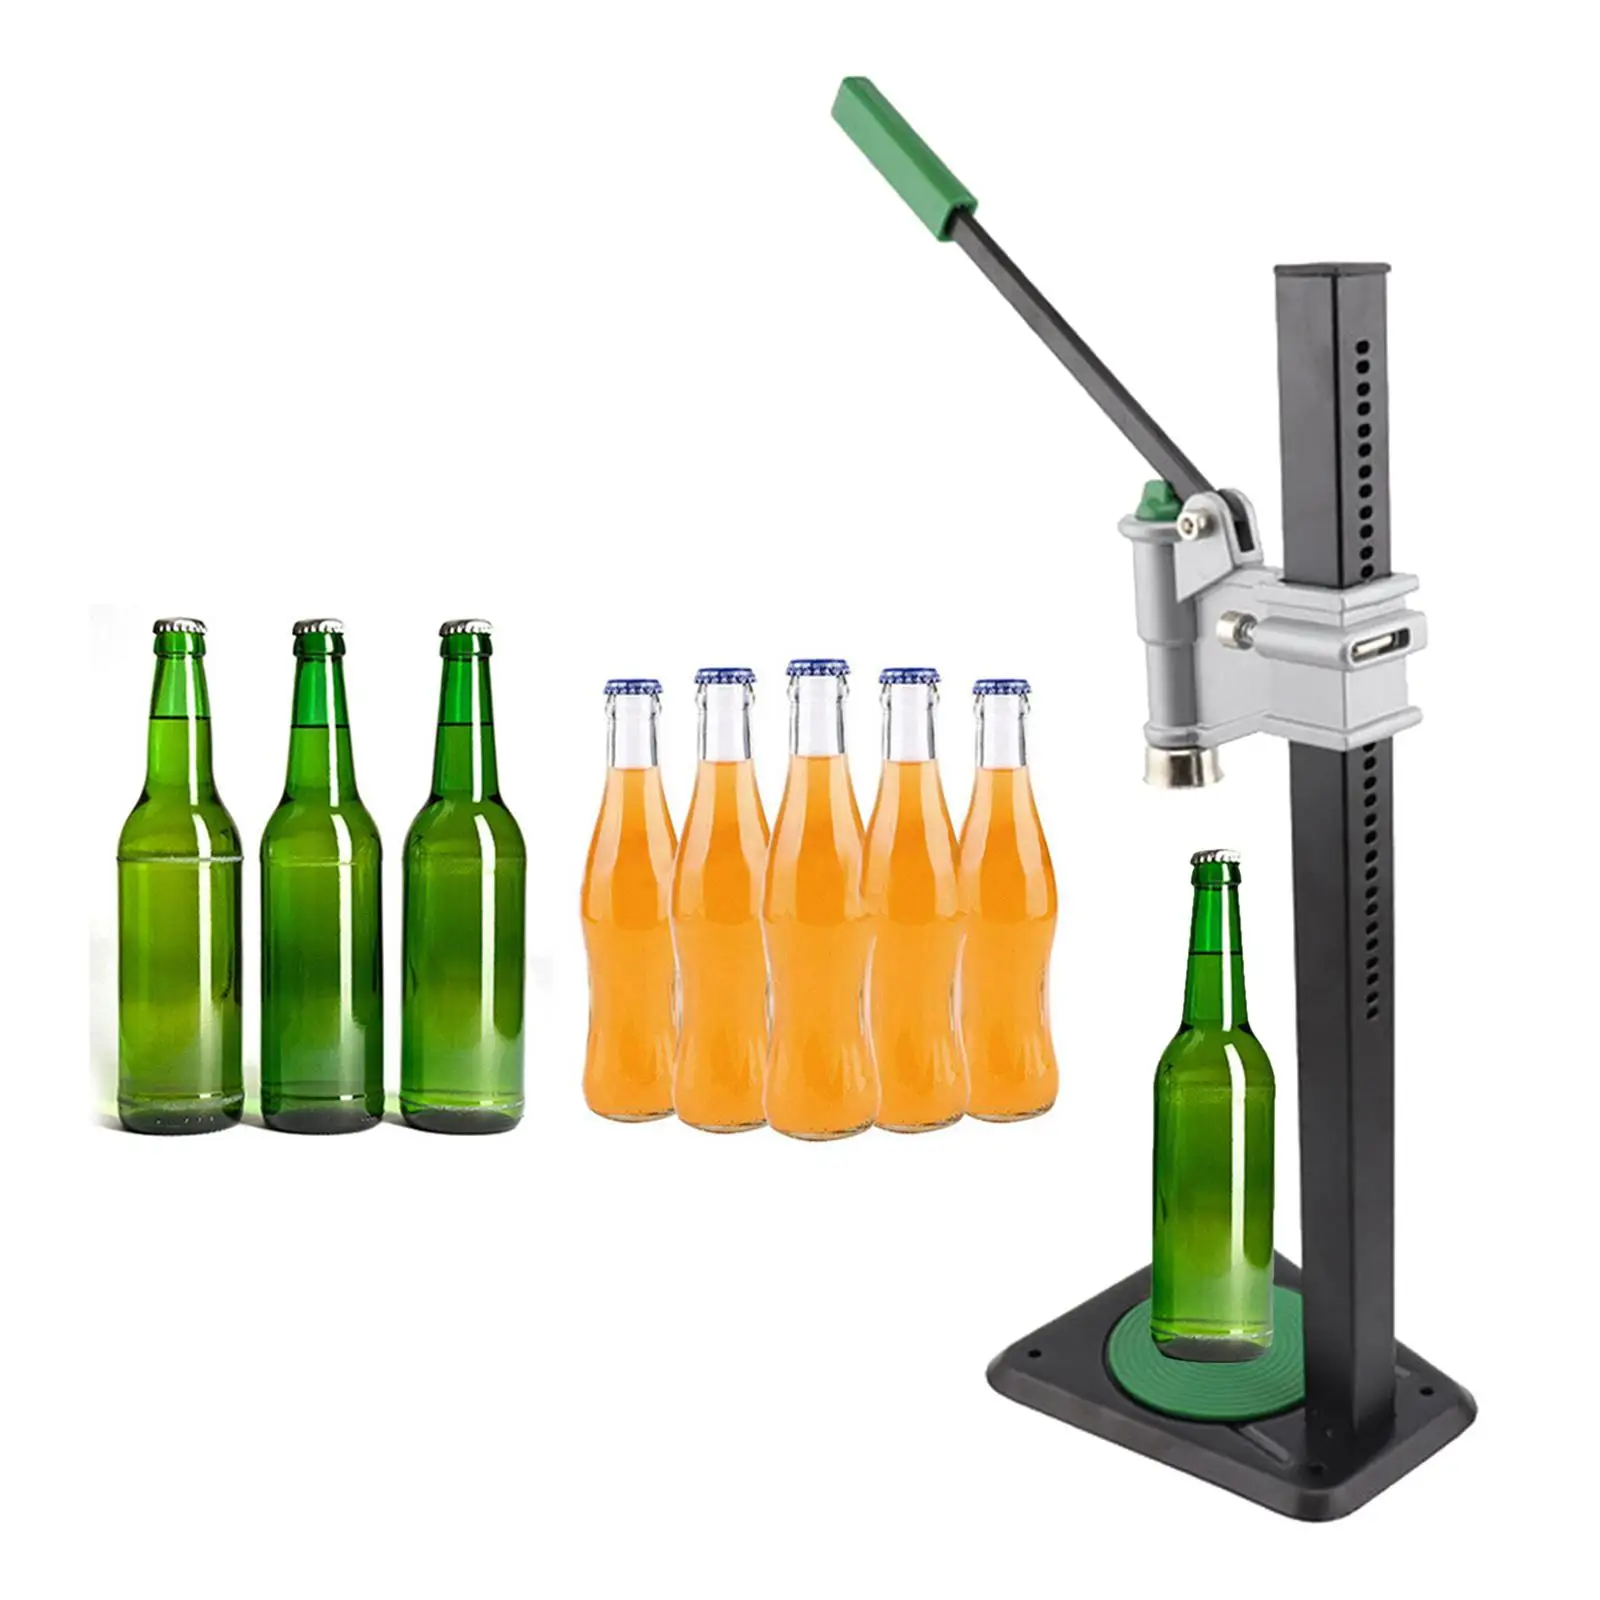 Capper,Bottle Sealer for Home Brew Beer Making or Glass Bottles TOPSALE Manual Bottle Capper Tool 